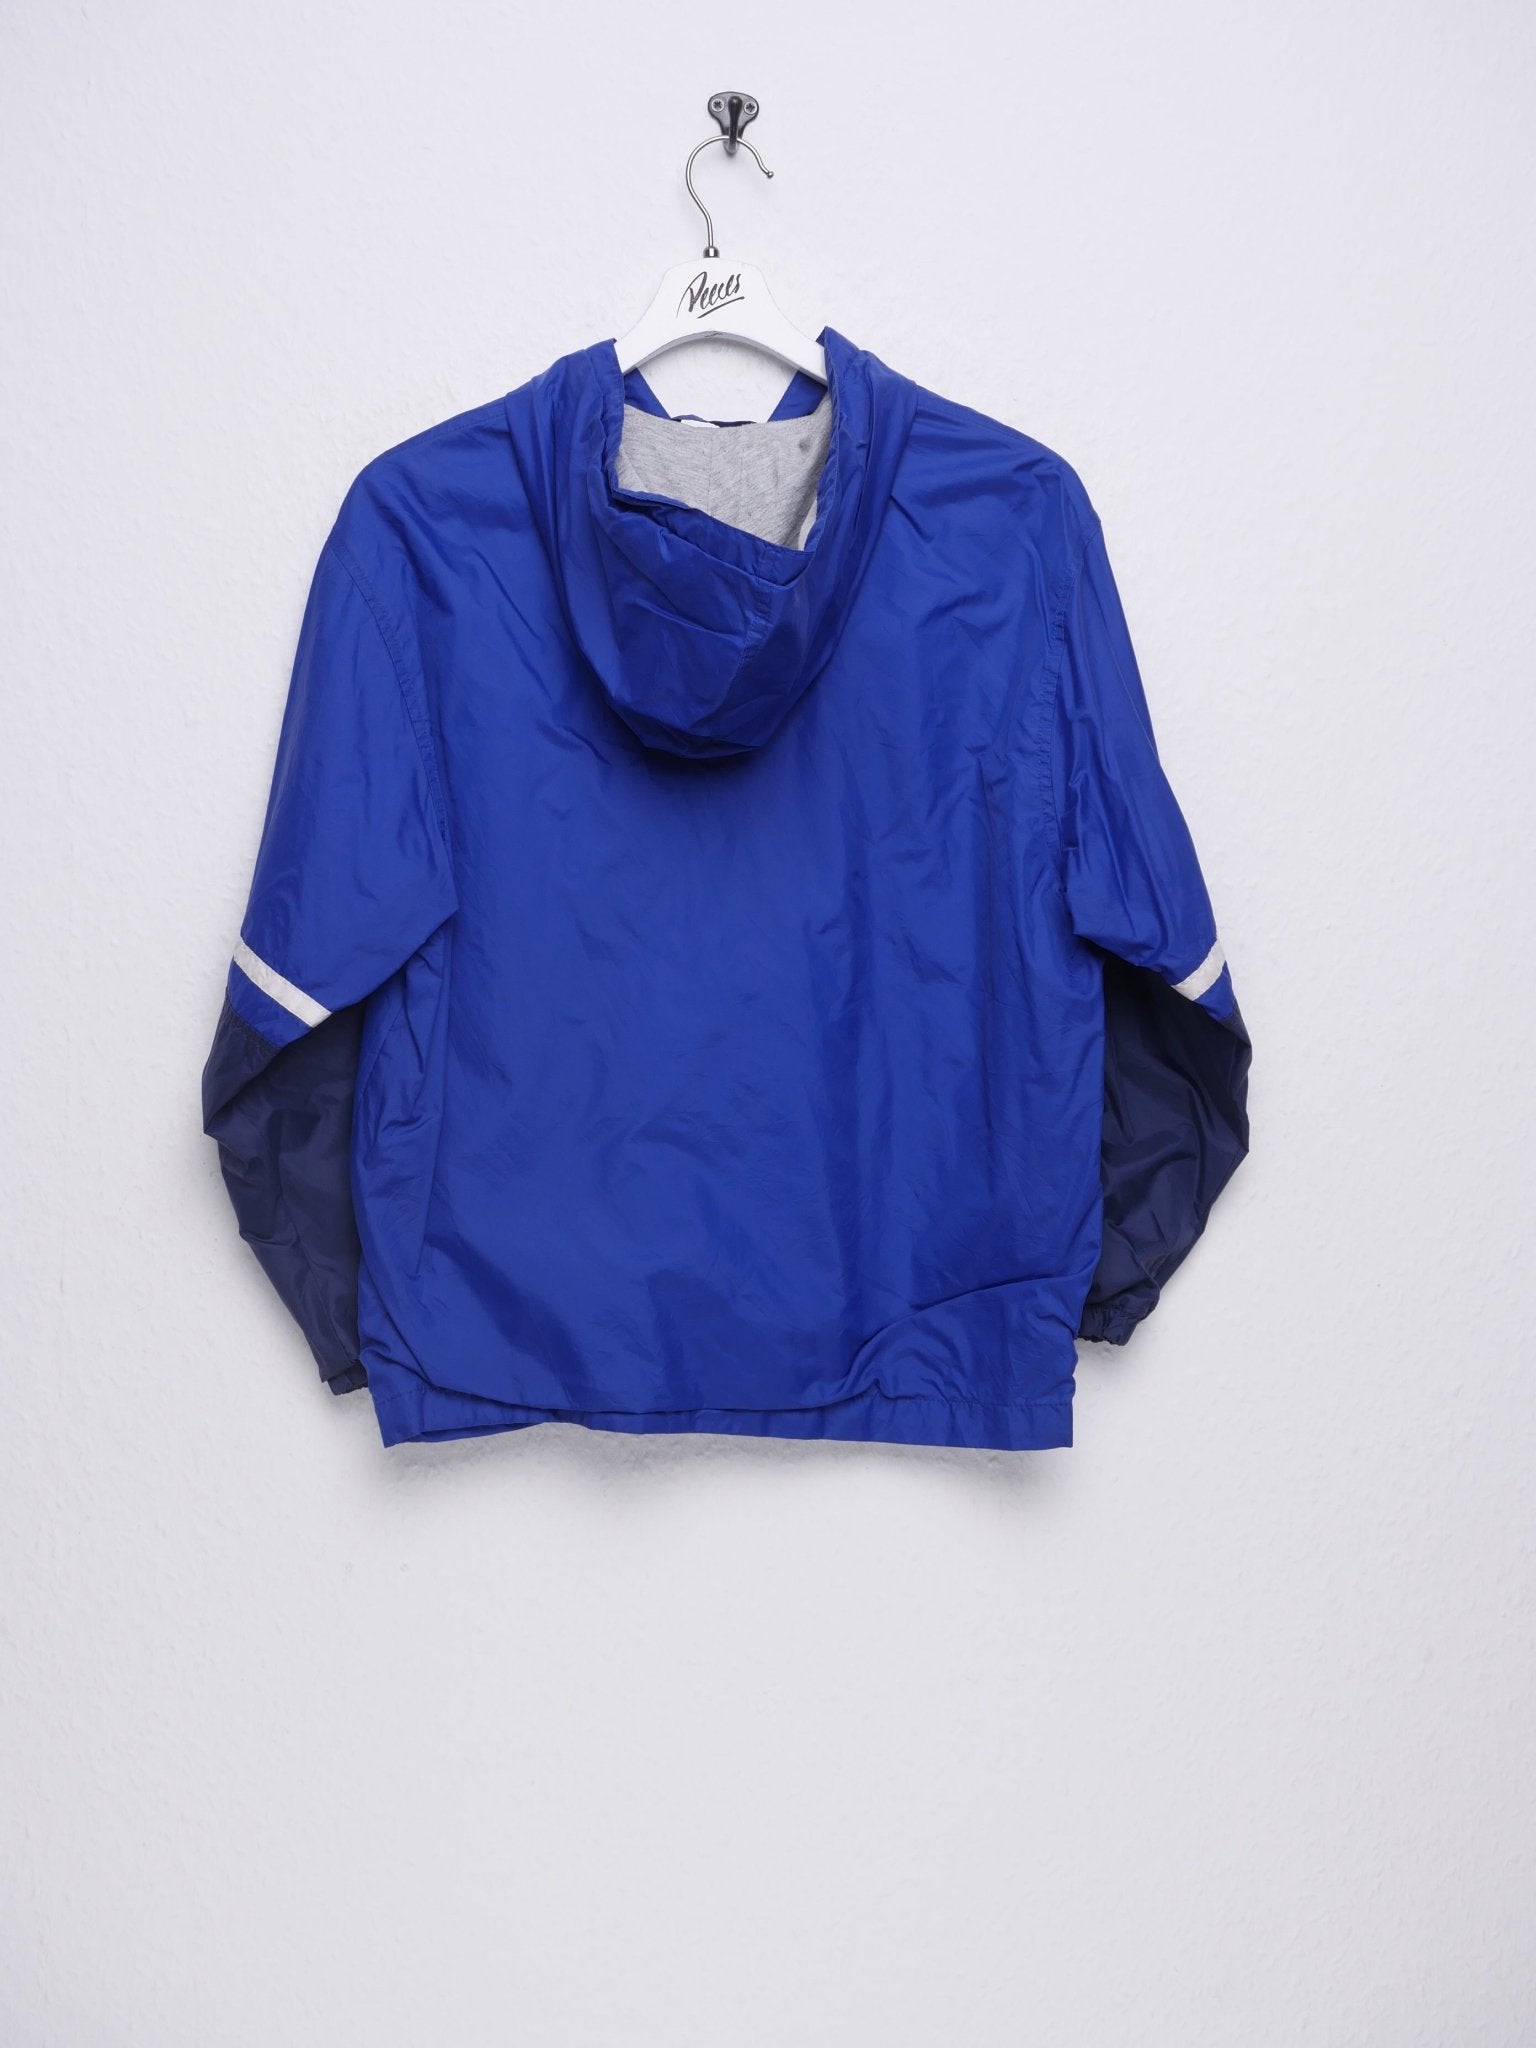 Nike embroidered Swoosh blue Vintage Track Jacke - Peeces